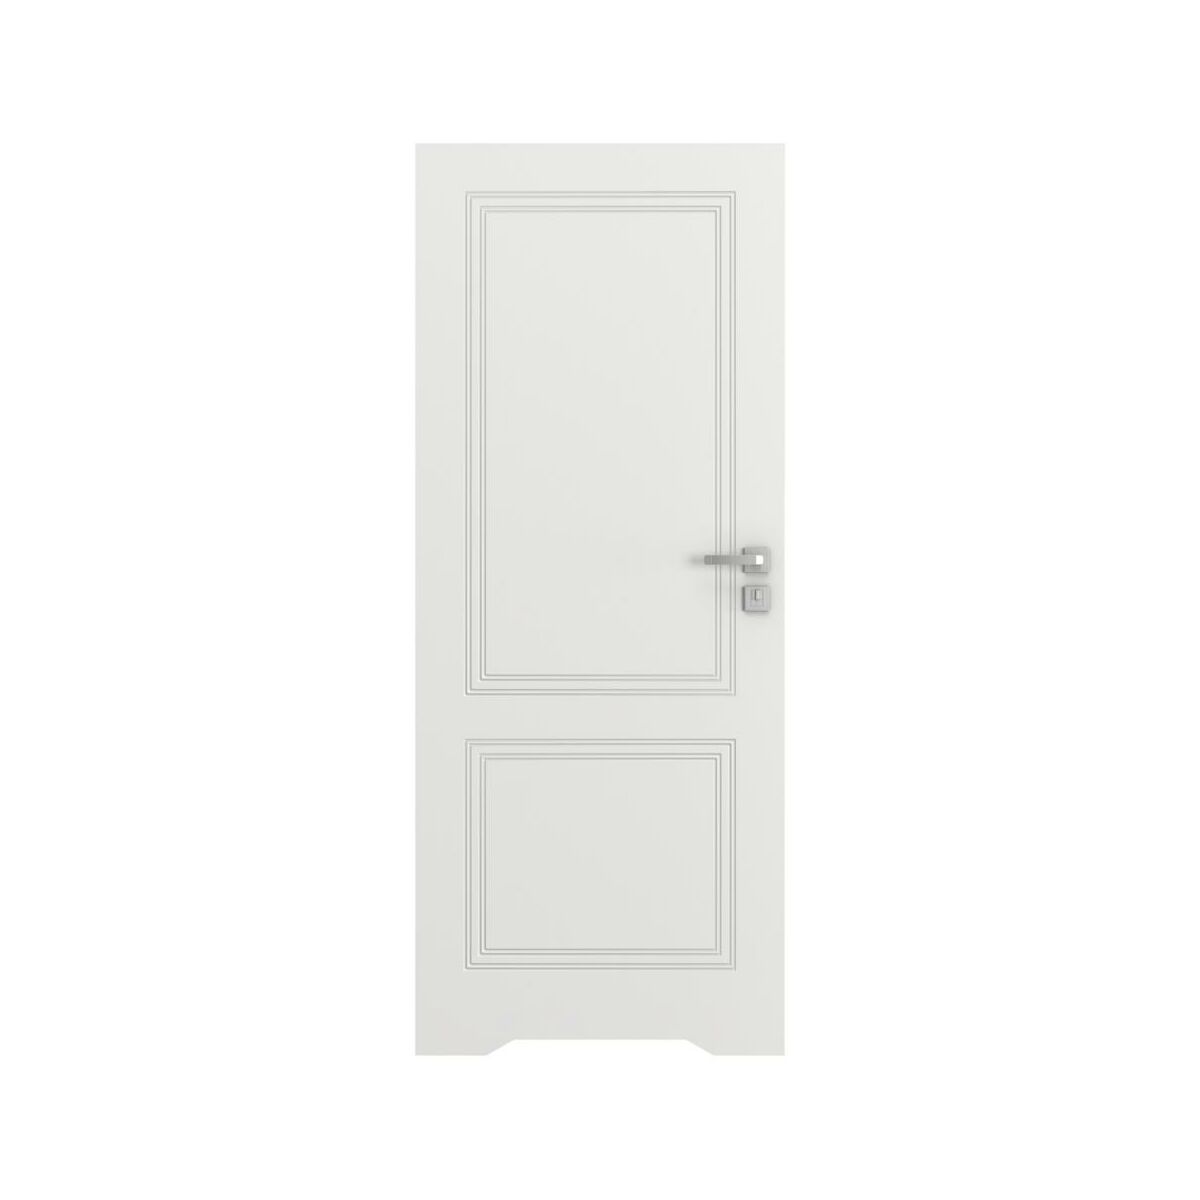 Drzwi wewnętrzne bezprzylgowe łazienkowe z podcięciem wentylacyjnym Vector V Białe 60 prawe Porta